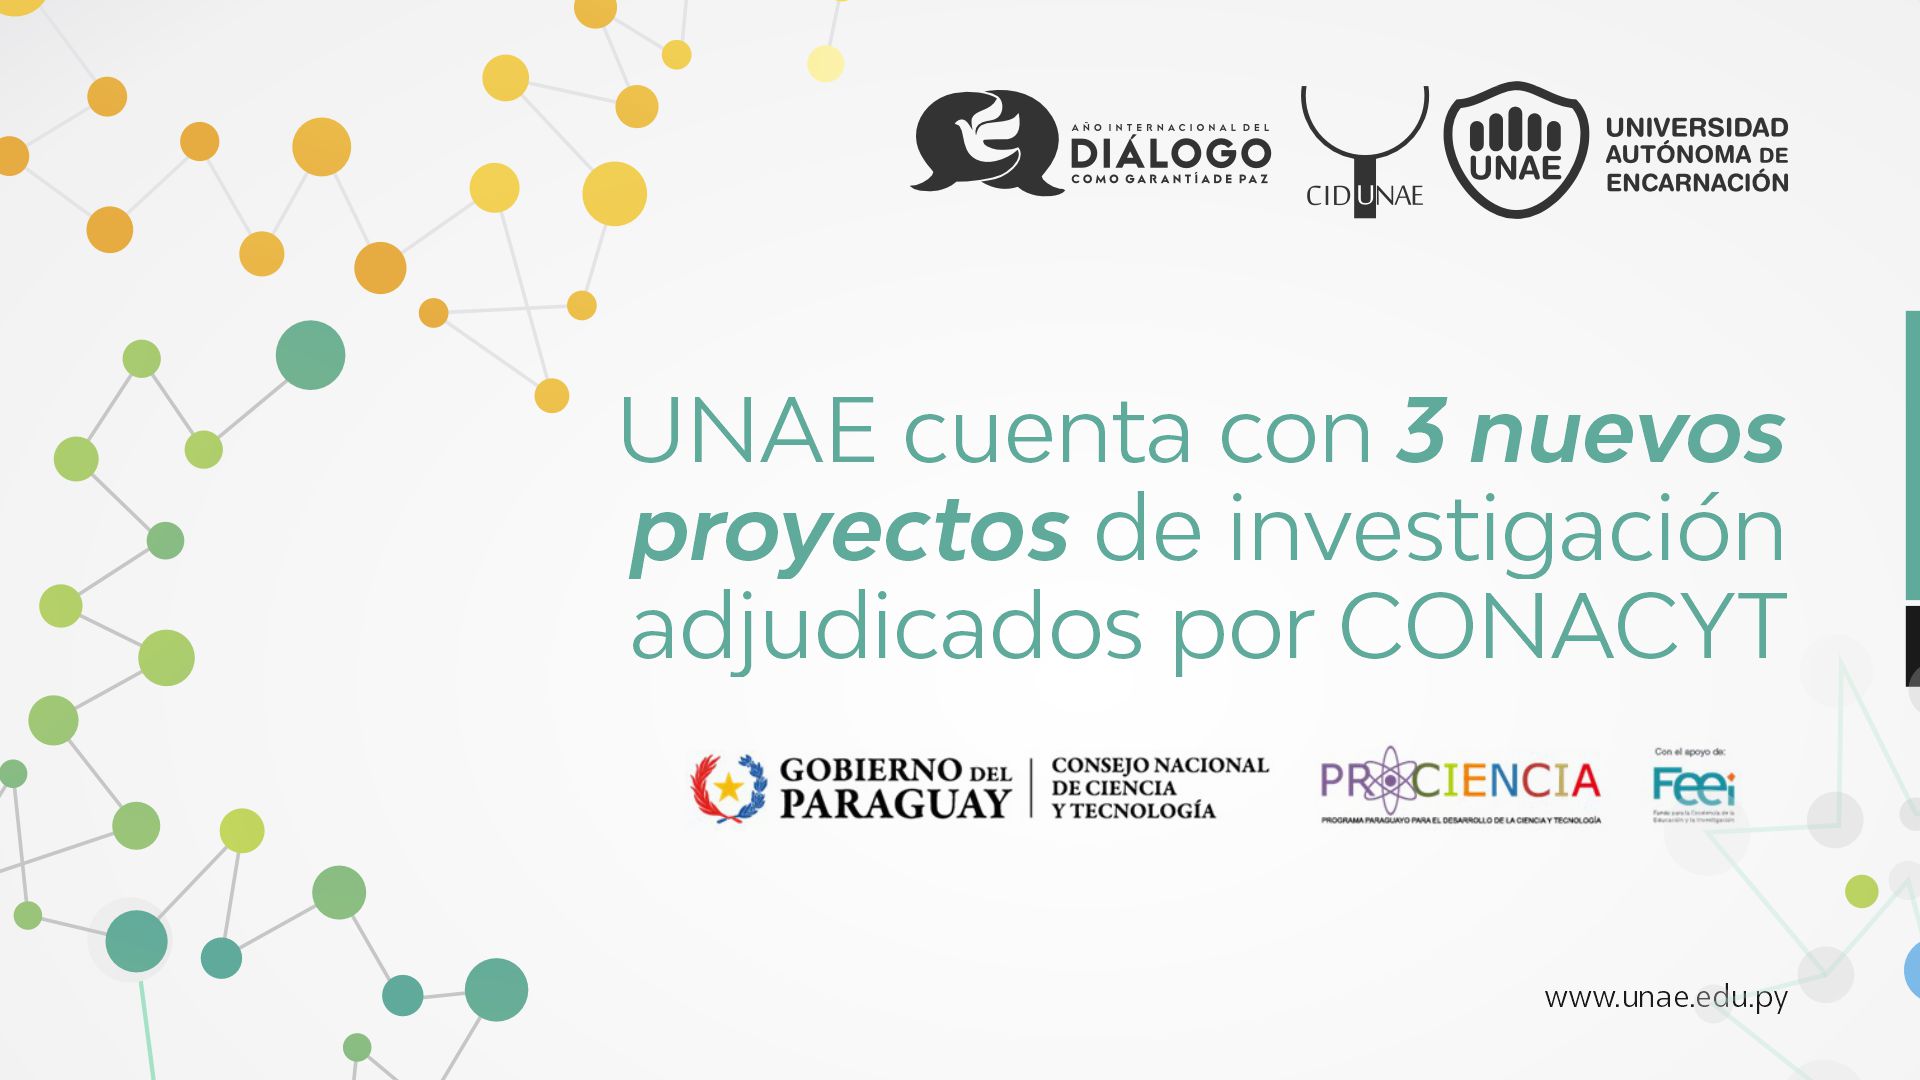 UNAE cuenta con 3 nuevos proyectos de investigación adjudicados por CONACYT